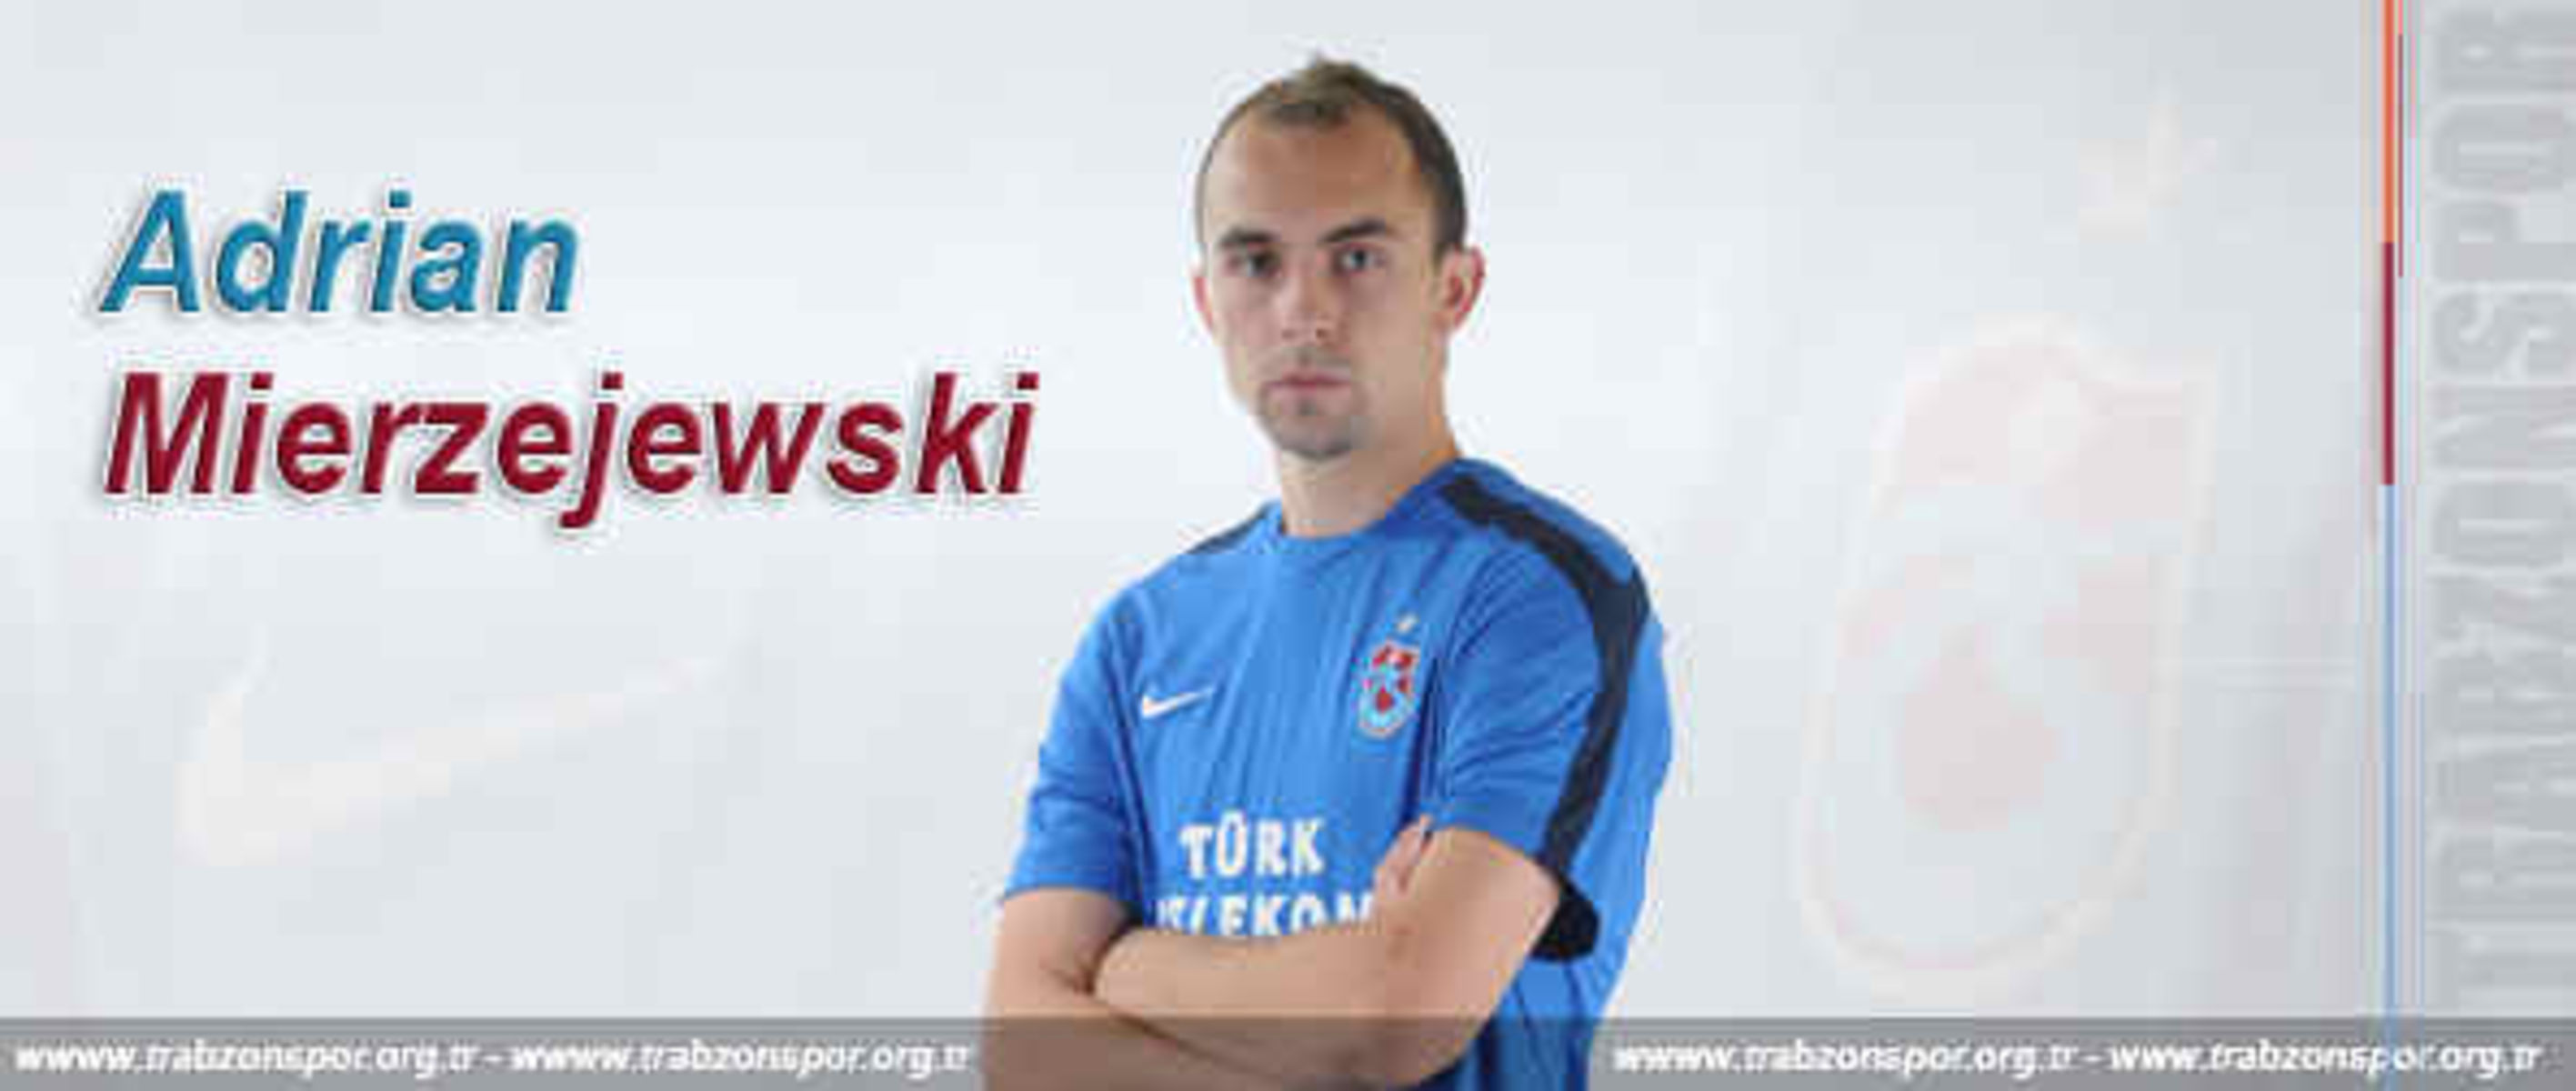 Adrian Mierzejewski. Fot. trabzonspor.org.tr